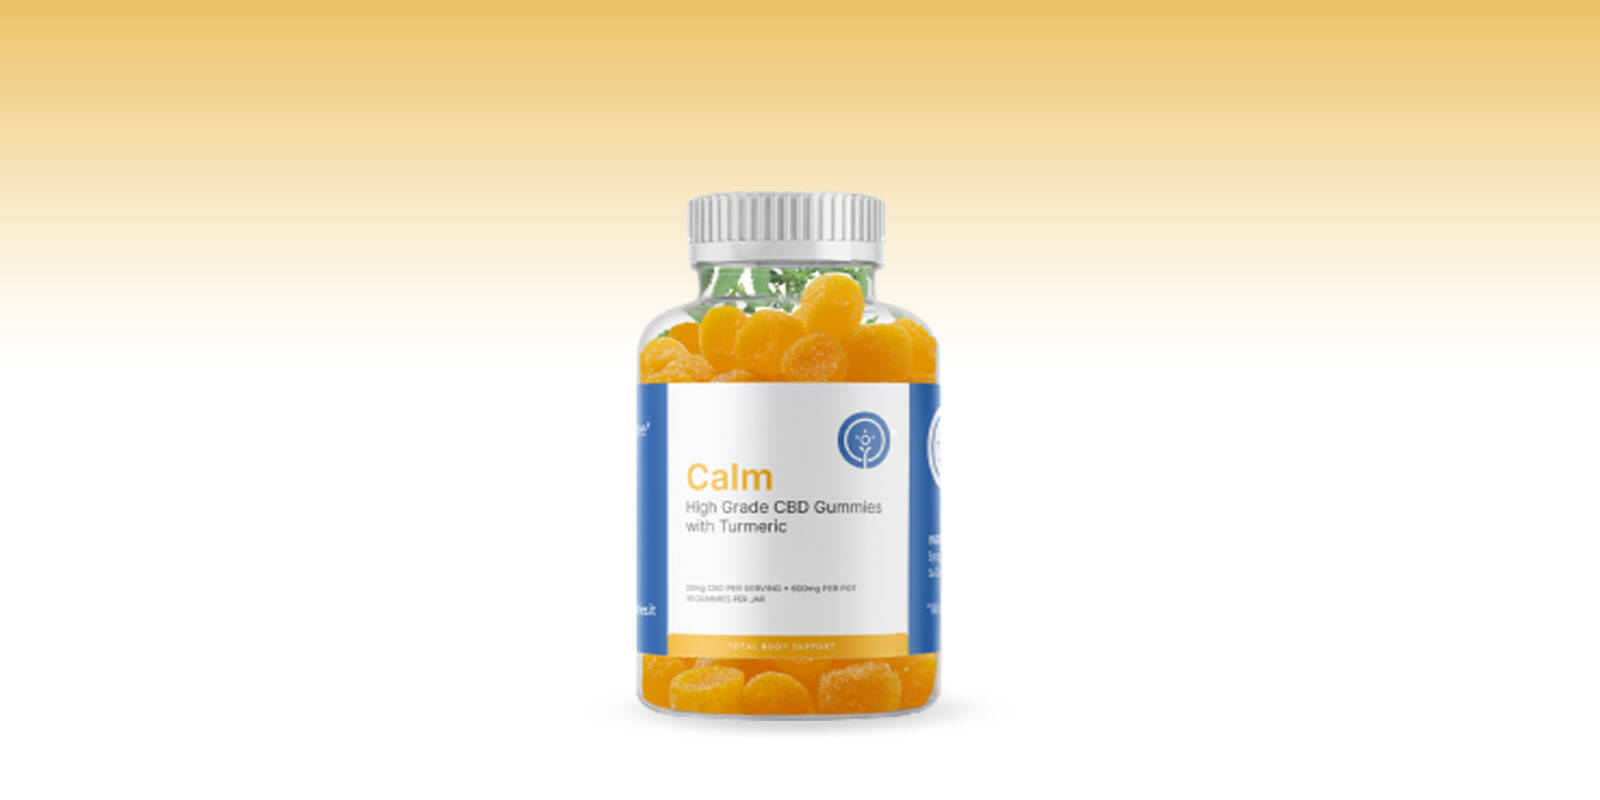 Calm Cure CBD Gummies Reviews